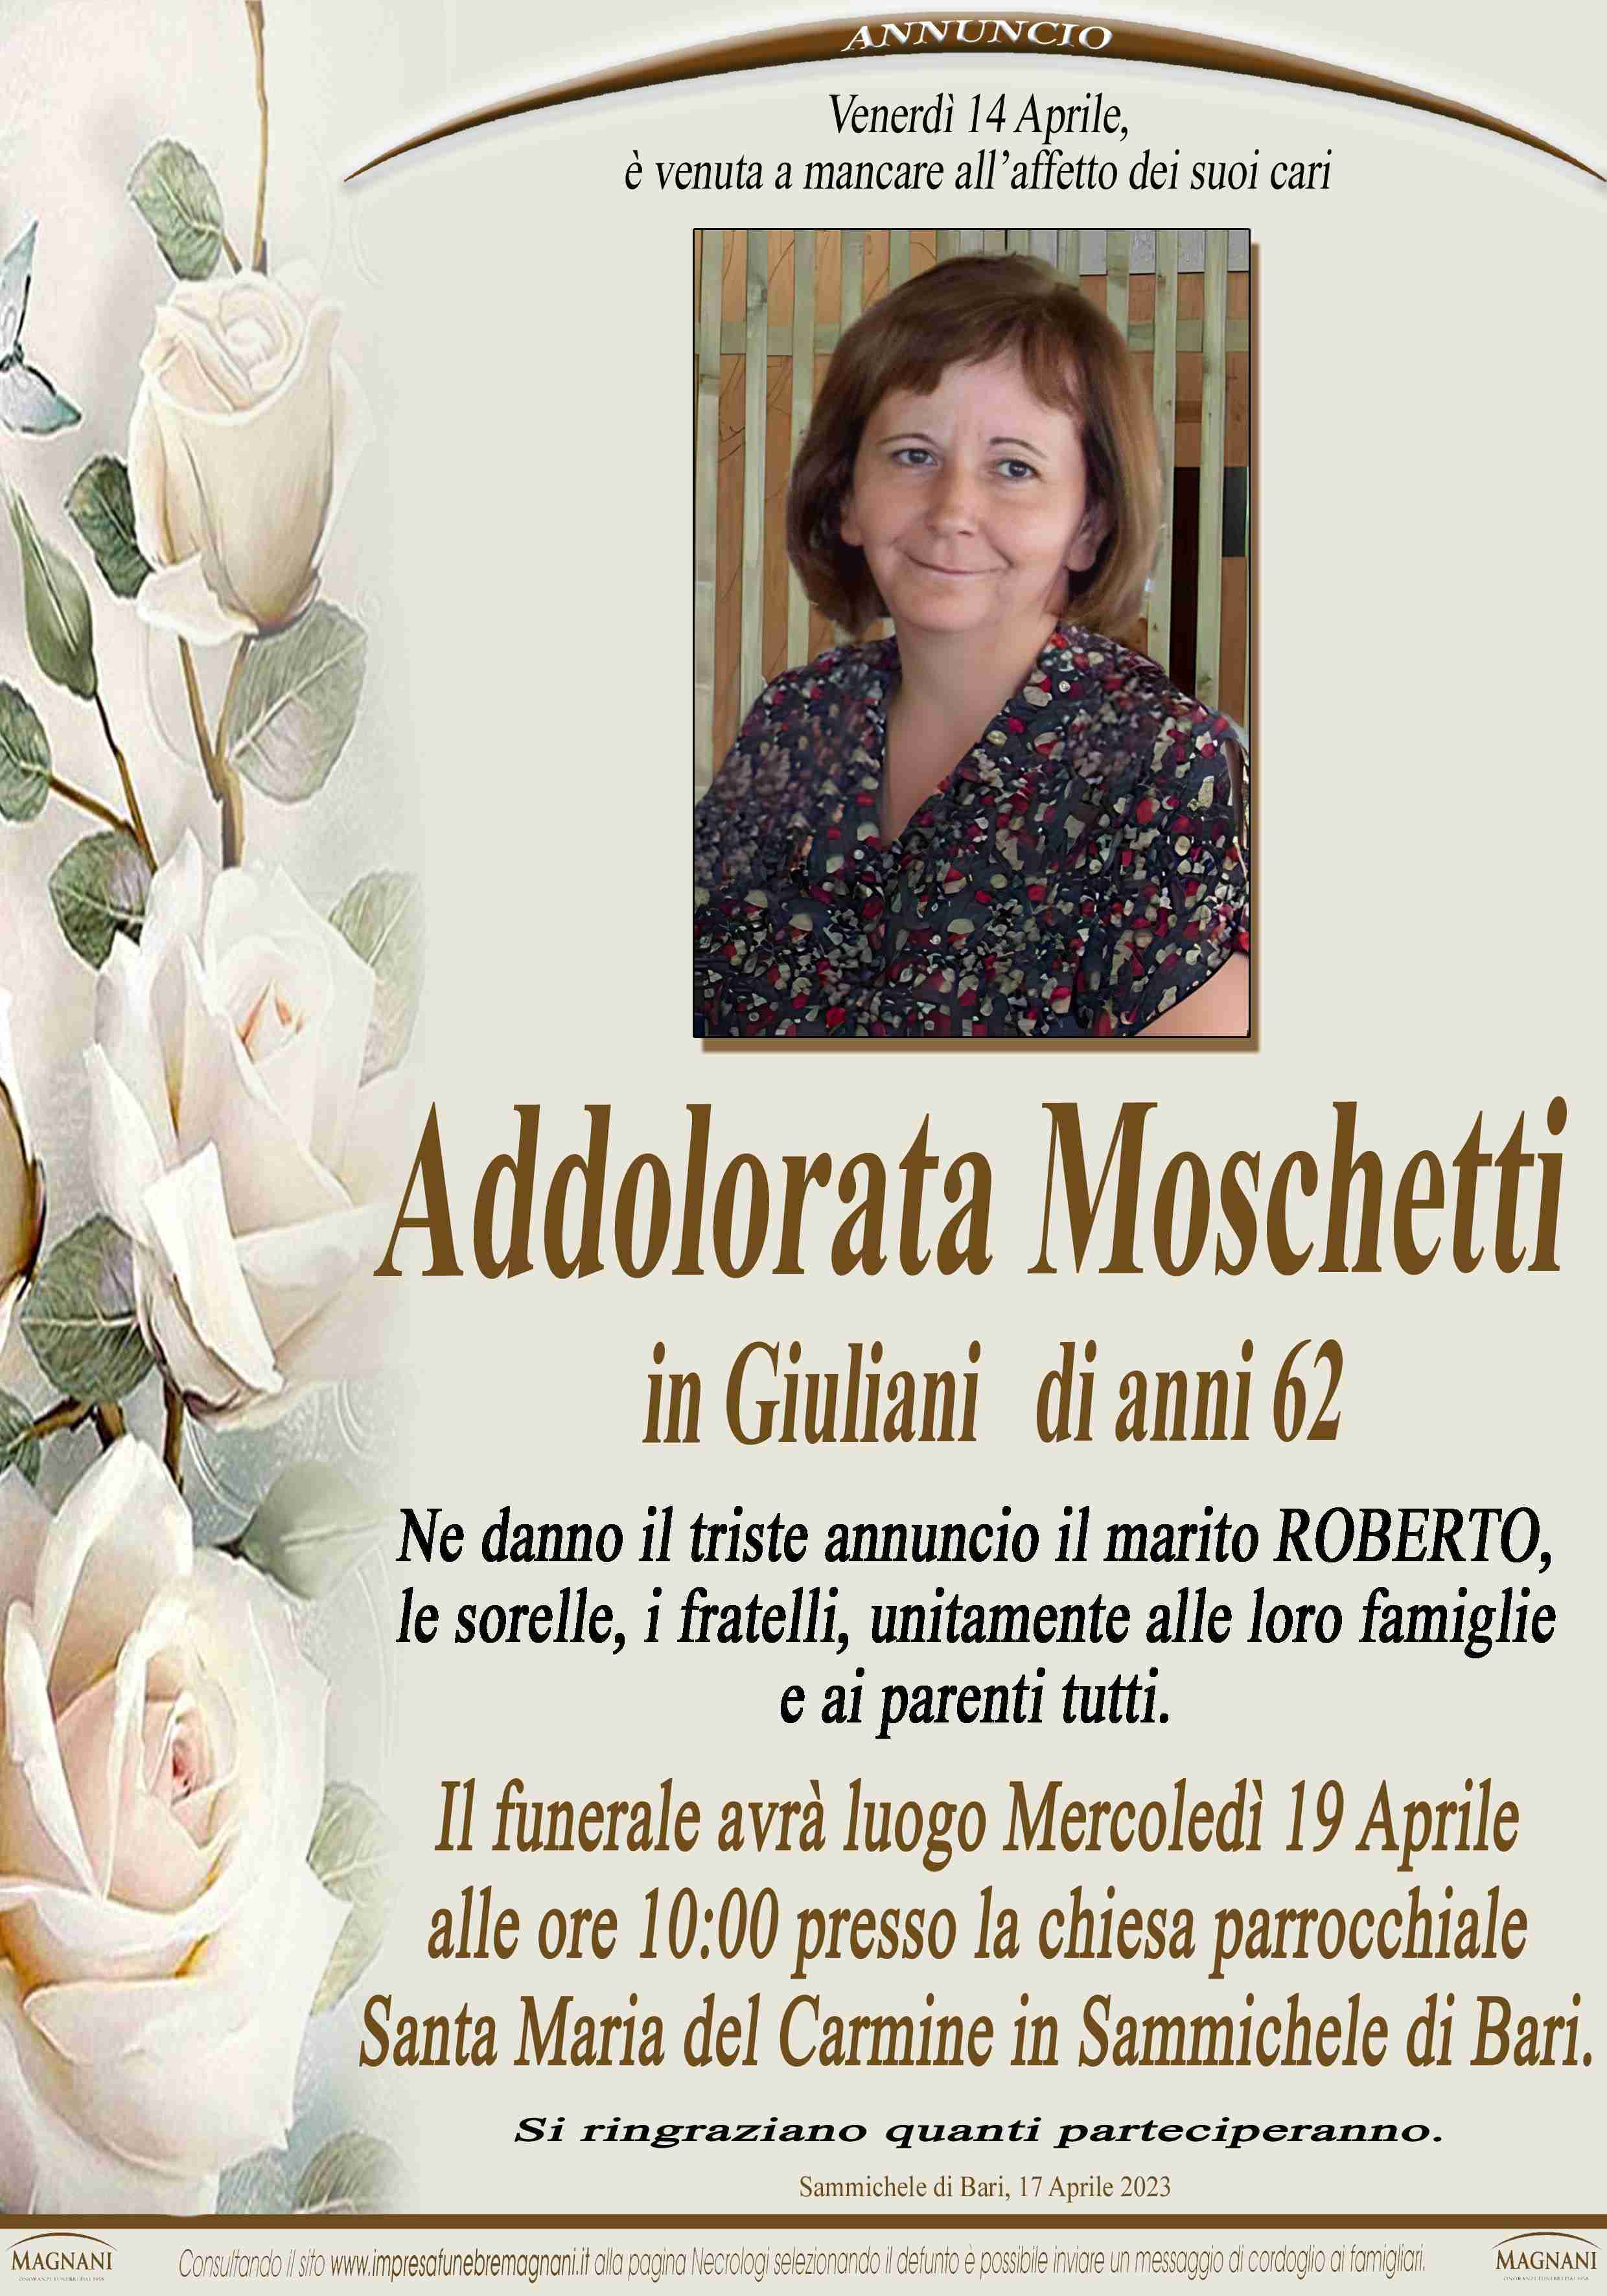 Addolorata Moschetti